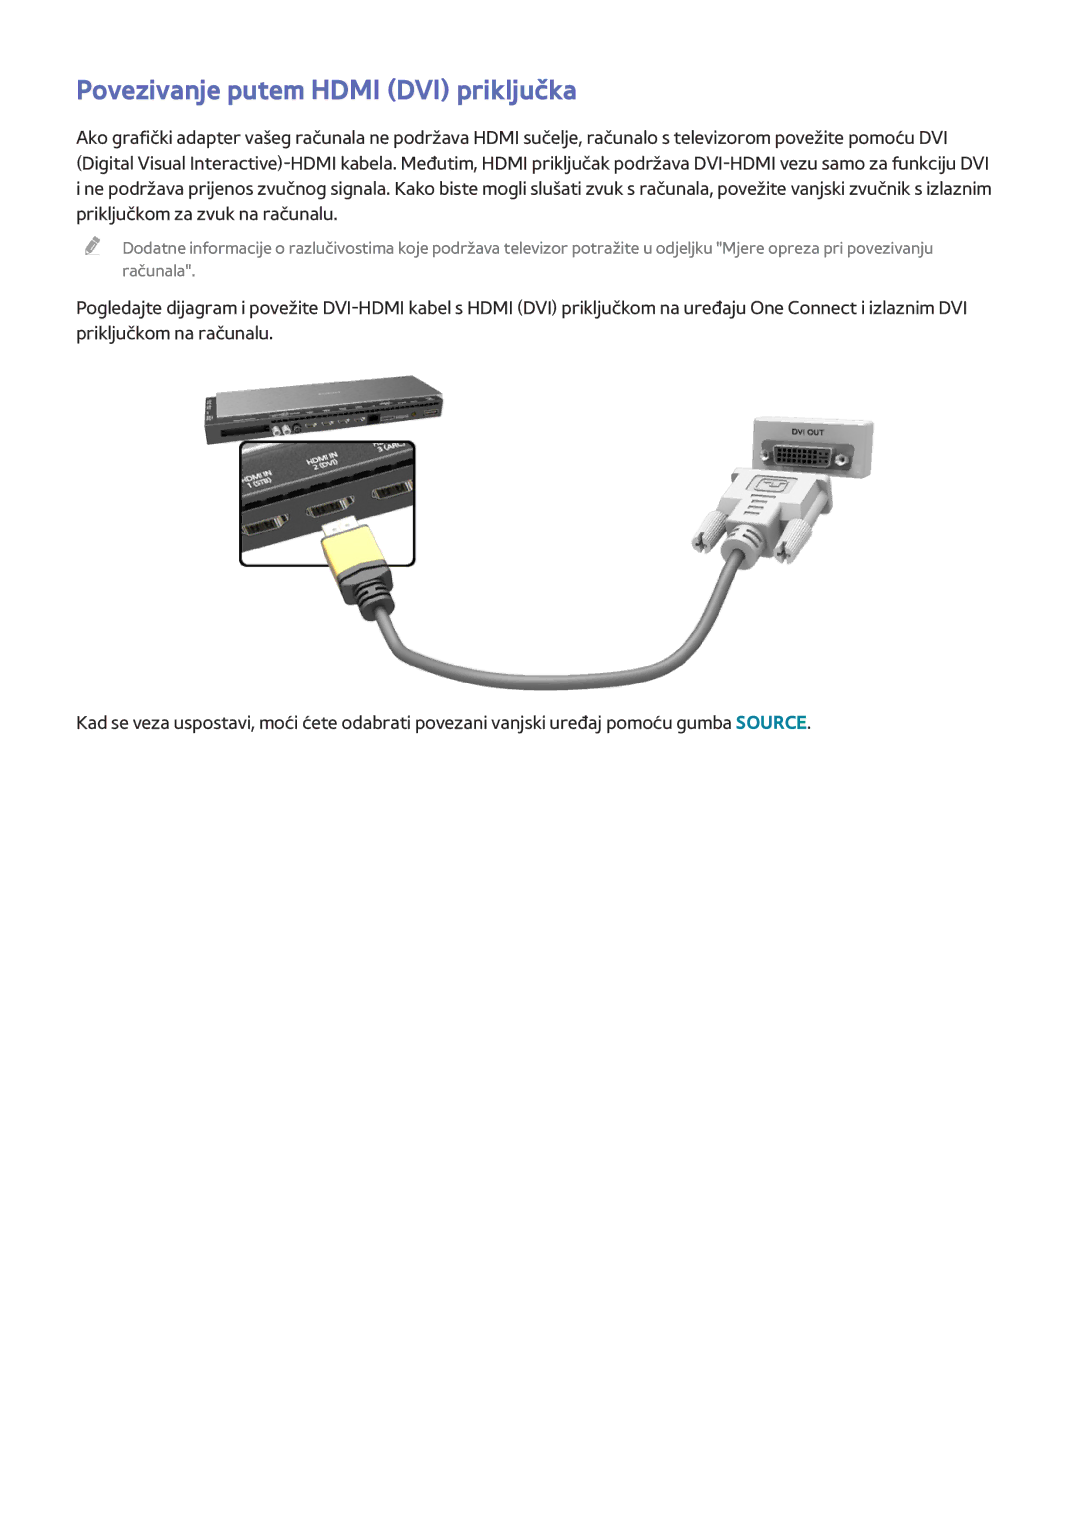 Samsung UE65HU8500TXXH, UE55HU8500TXXH, UE78HU8500TXXH manual Povezivanje putem Hdmi DVI priključka 